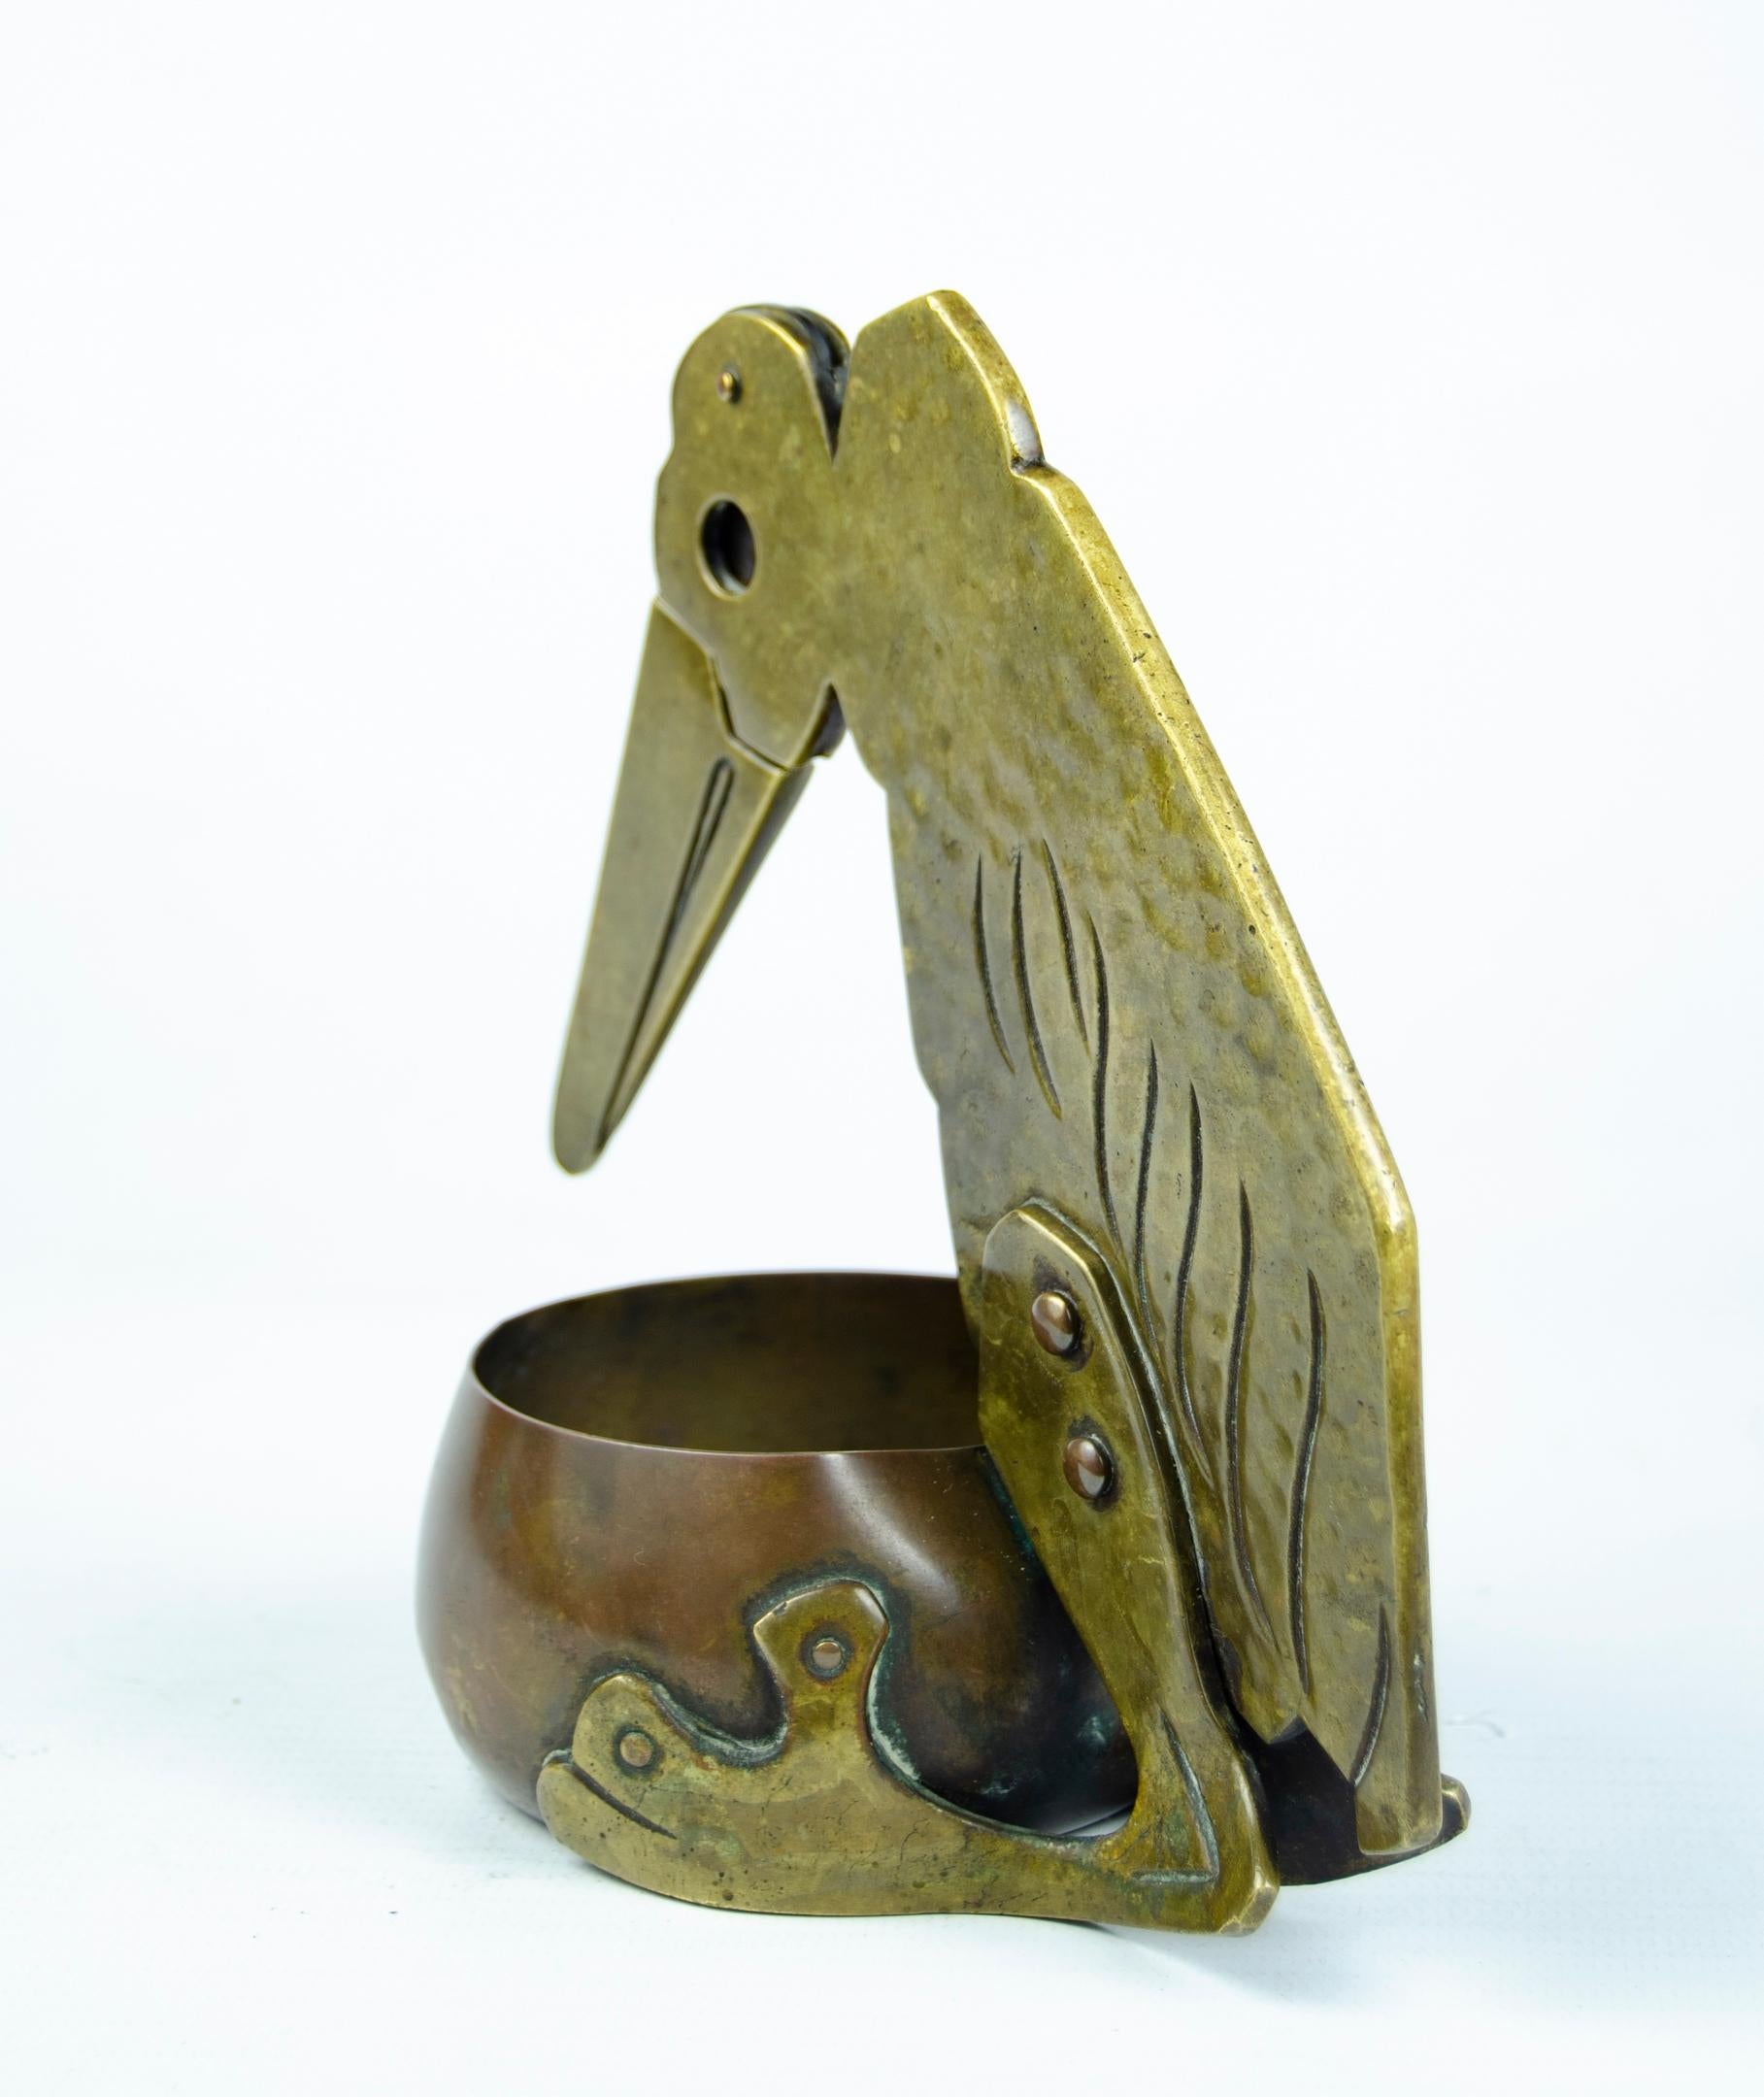 Kunst und Handwerk schneidet Bronze- und Kupferzigarren
Pelikan-Motiv
kurze seltene Zigarre Circa 1920
Sehr guter Zustand
natürliche Abnutzung.